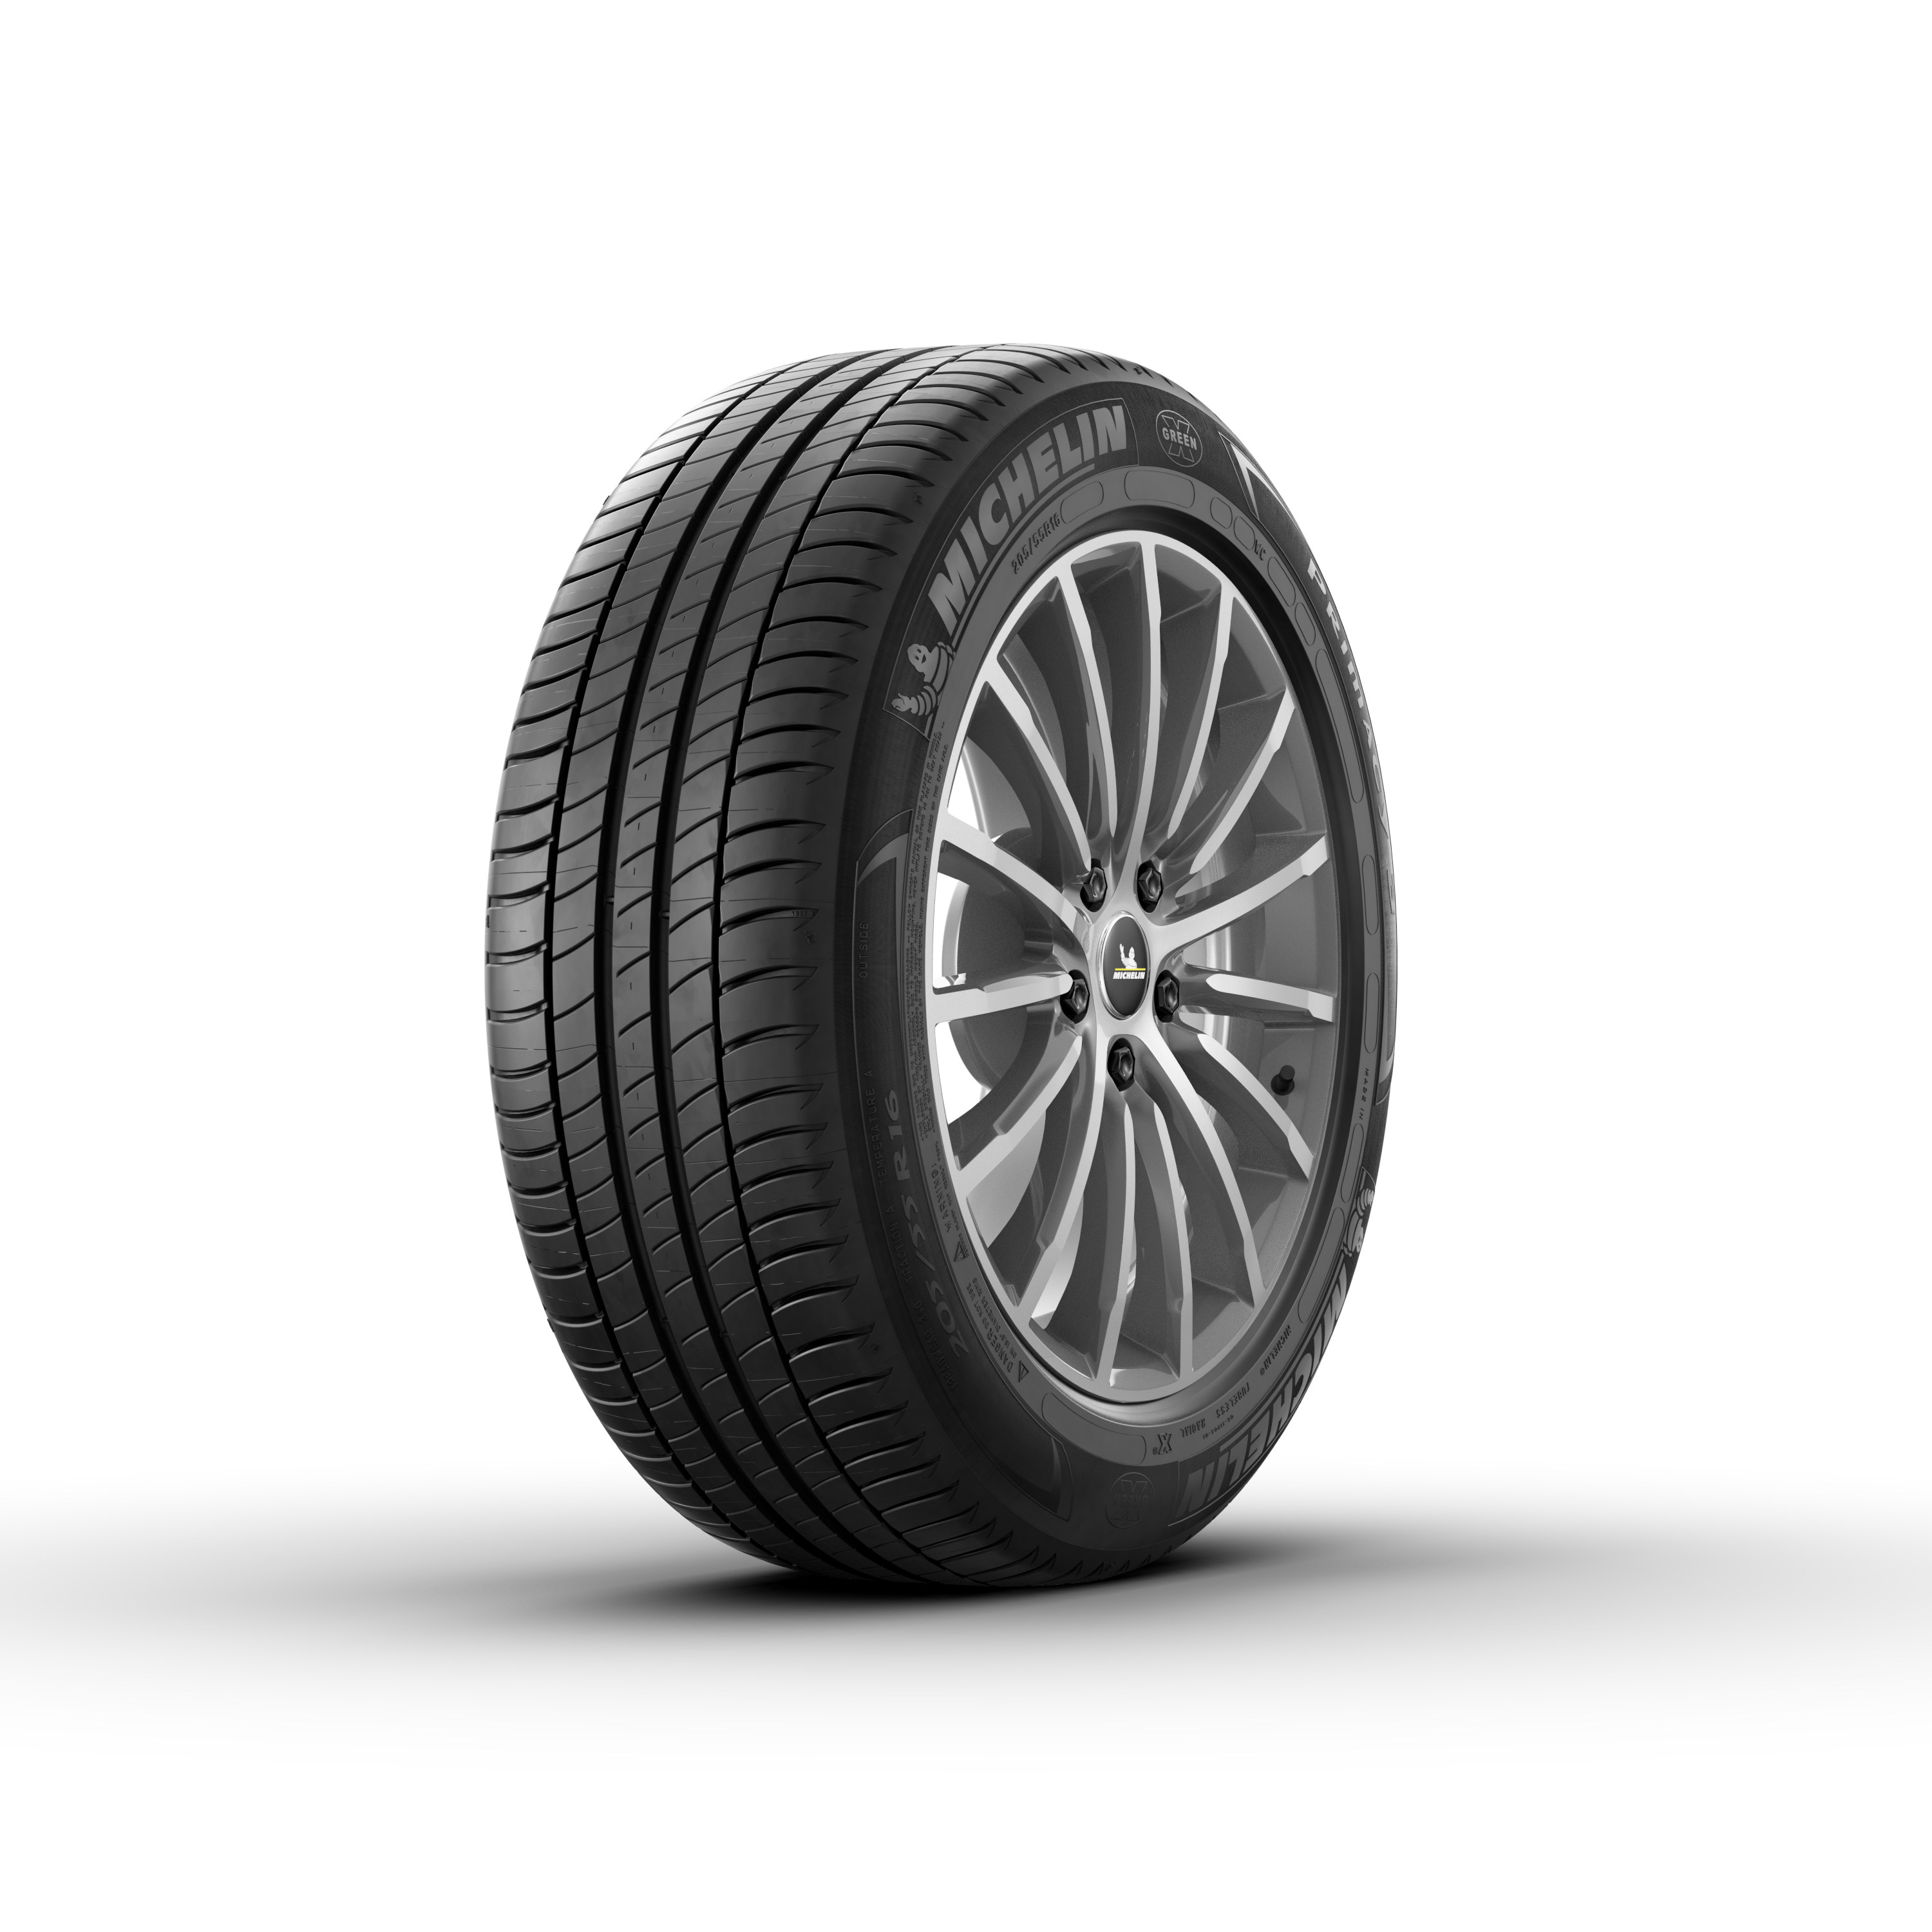 MICHELIN Primacy 3 - Car Tire | MICHELIN USA